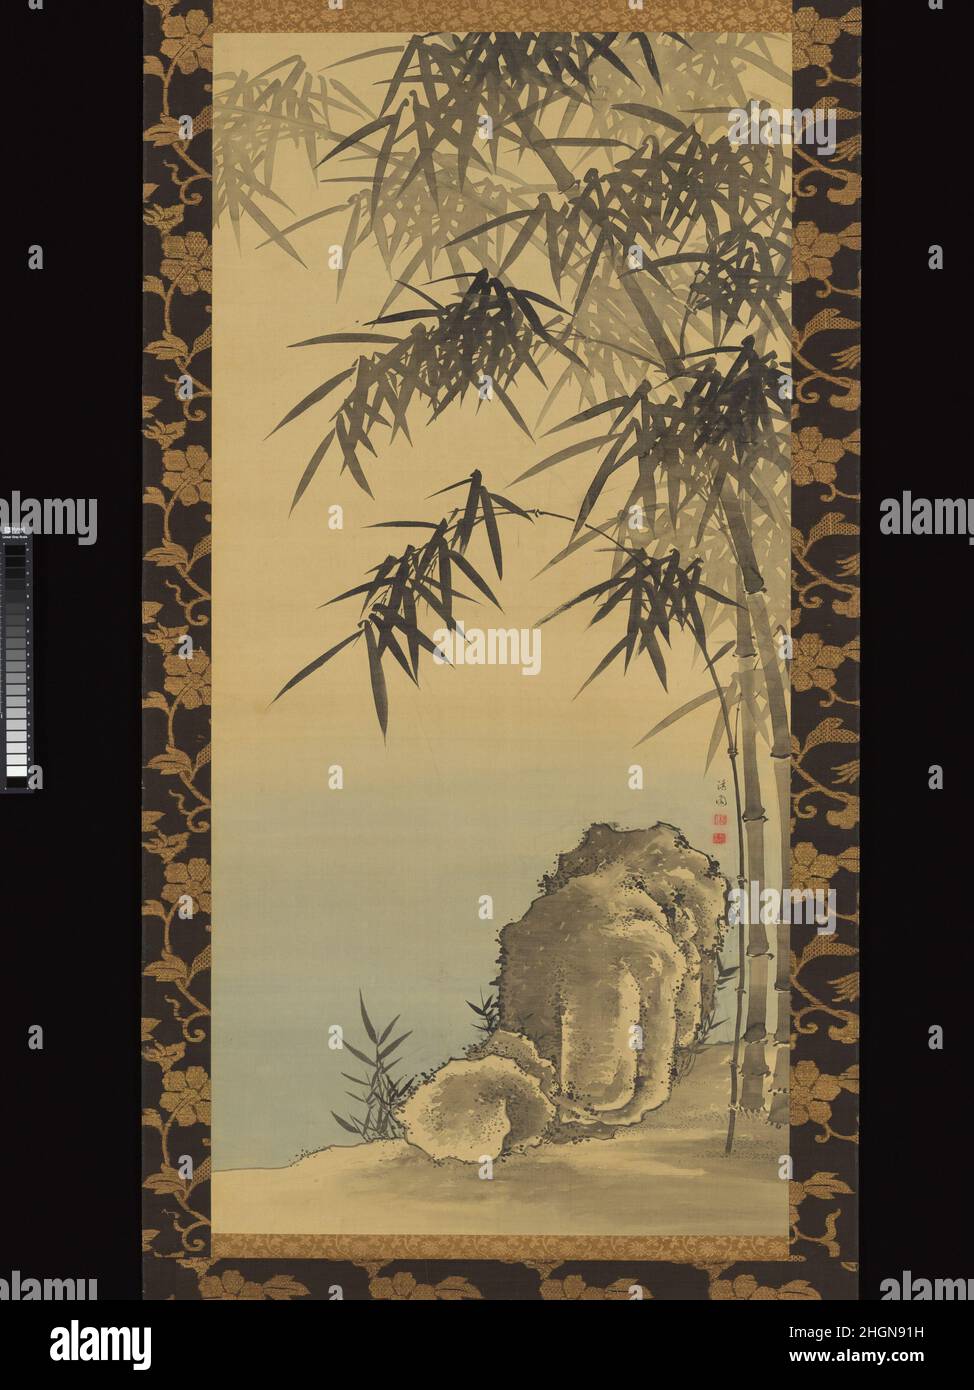 Rock et bambou 18th siècle Yanagisawa Kien cette composition simple d'un stand de bambou se pliant sur une roche angulaire, à facettes est l'oeuvre de Yanagisawa Kien, qui a créé de nombreuses peintures de bambou, fleurs et oiseaux, et d'autres sujets populaires parmi les artistes de la première école de Nanga.Le bambou était un motif privilégié parmi les peintres en tant que symbole de la vertu et de la force savantes.Ici, la configuration monumentale (malgré sa taille) de la roche, et la manipulation fluide et rythmique de la brosse dans le traitement des feuilles de bambou, ainsi que les variations dans les tons d'encre, suggèrent que l'artis Banque D'Images